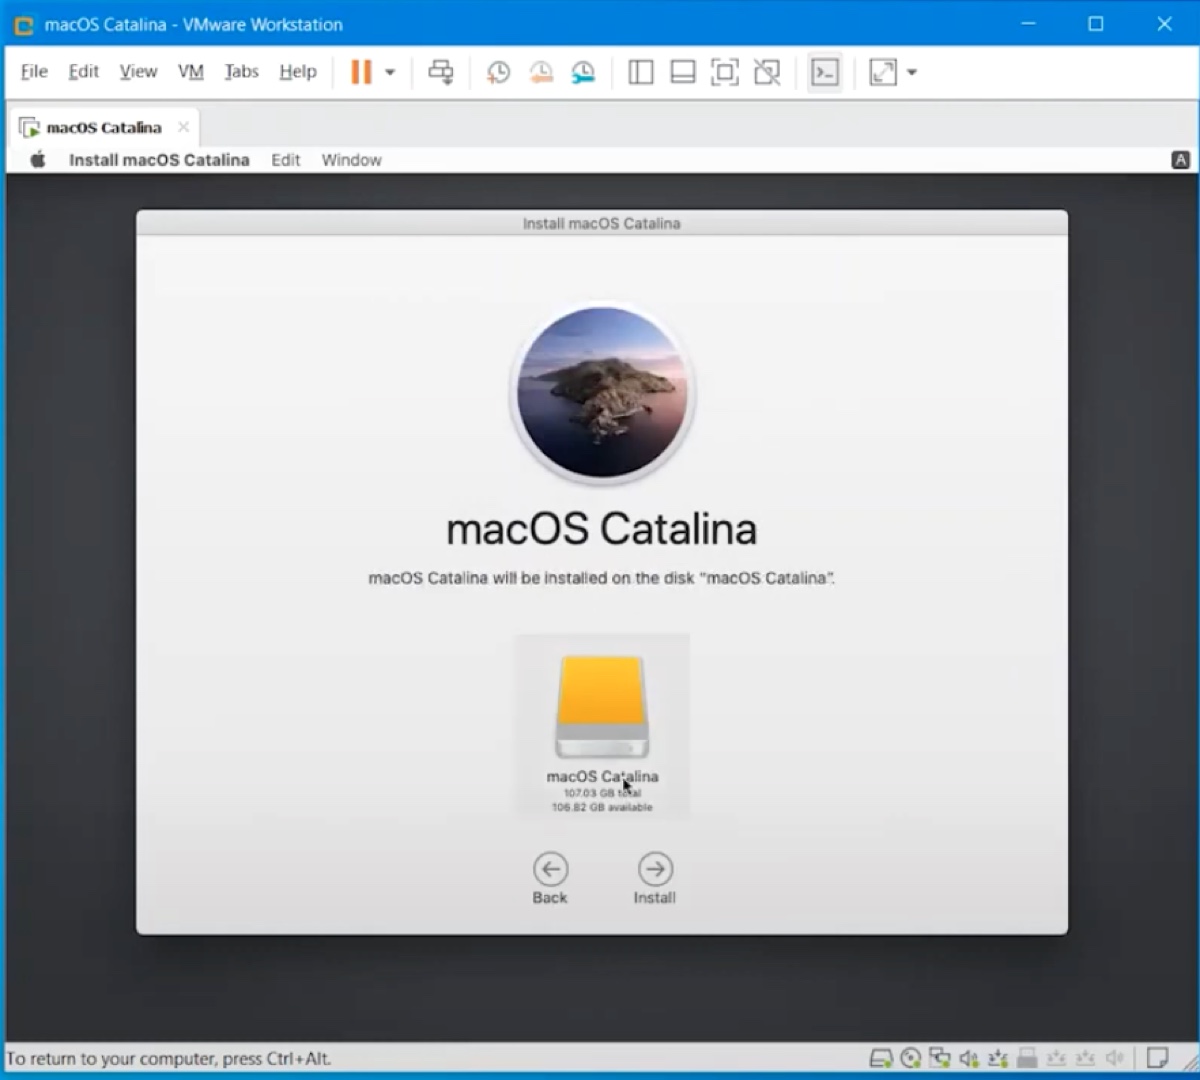 Choisissez d'installer macOS Catalina sur le disque virtuel